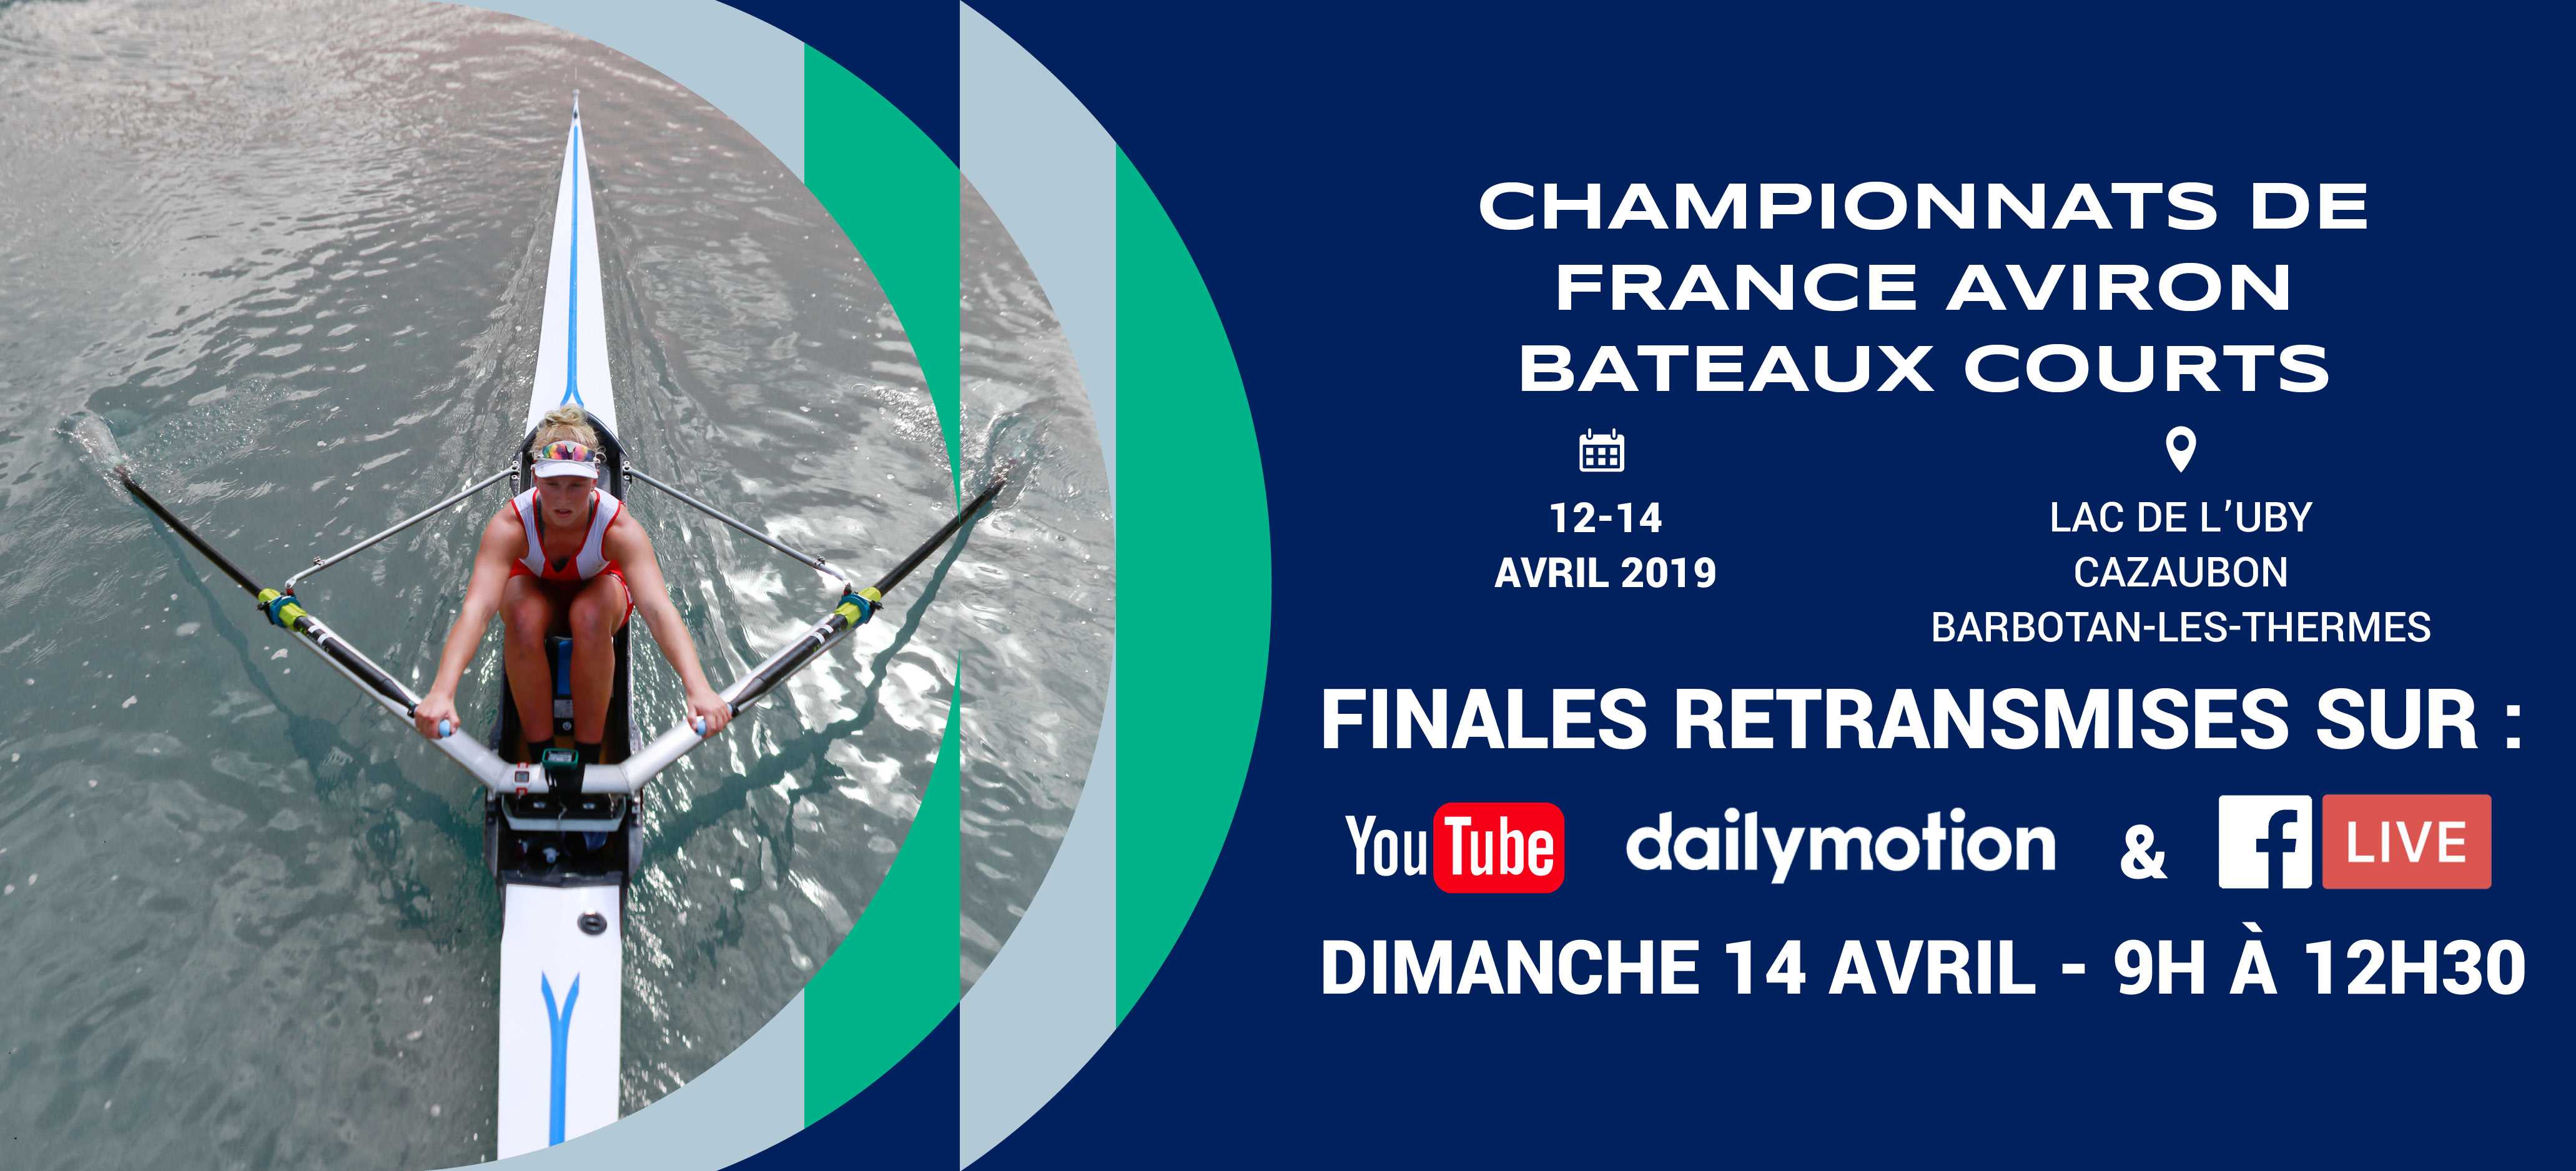 Championnat de France bateaux courts Para-aviron et Critérium Aviron adapté